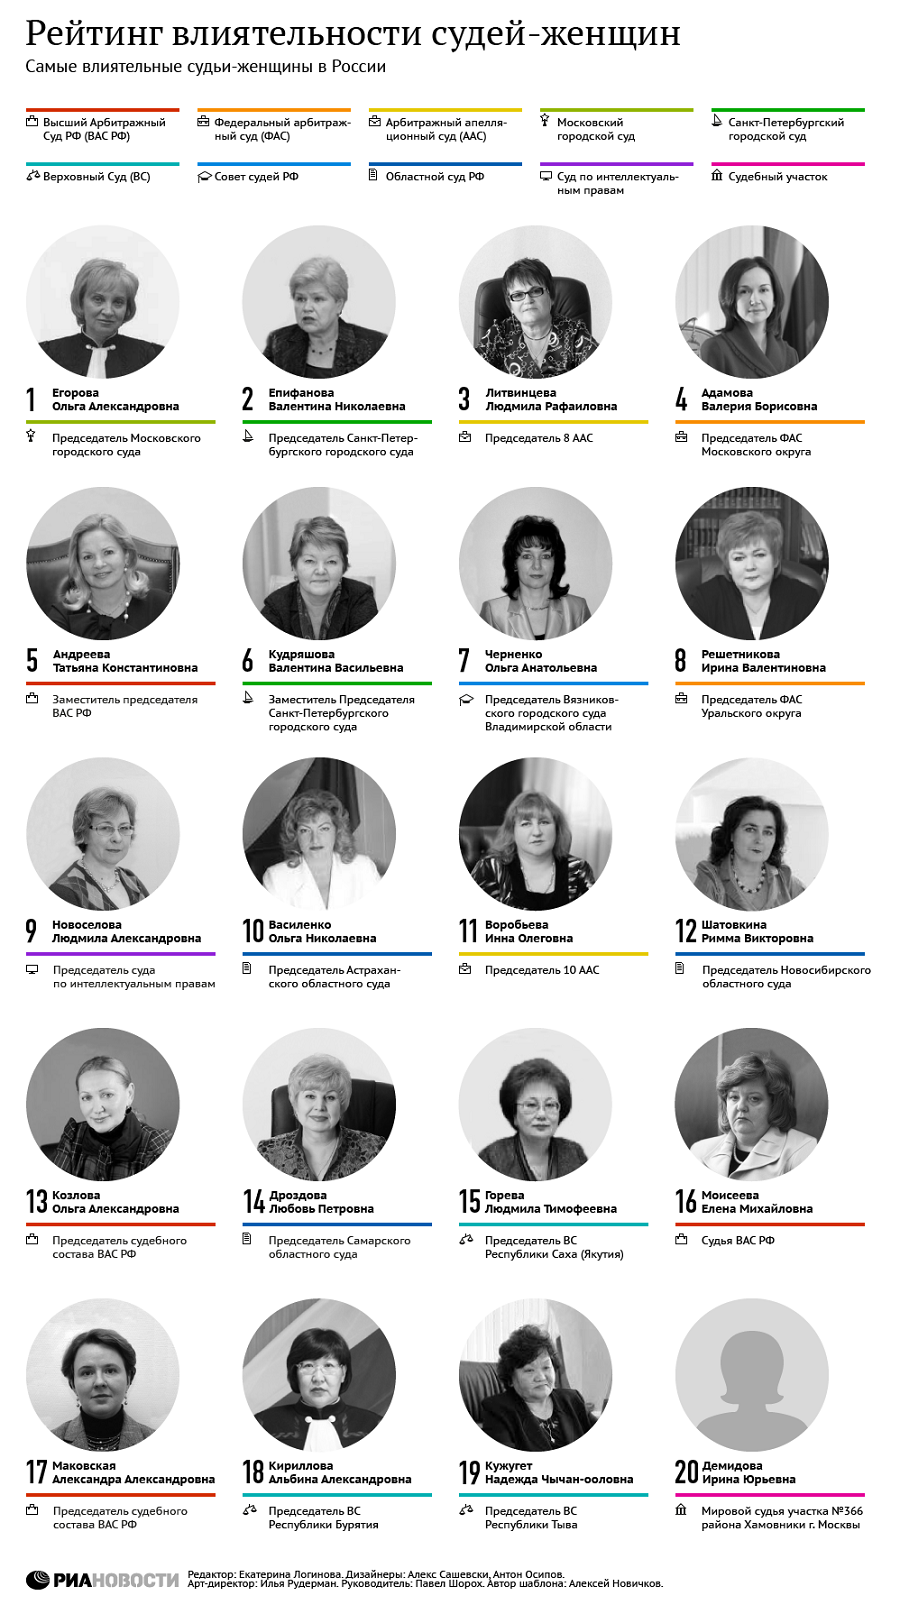 Рейтинг РАПСИ: самые влиятельные судьи-женщины